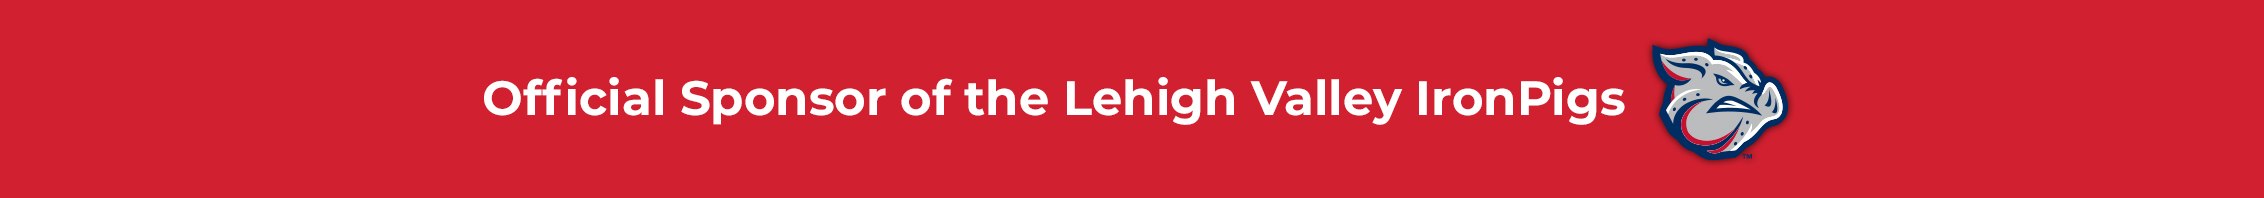 Lehigh Valley Partner